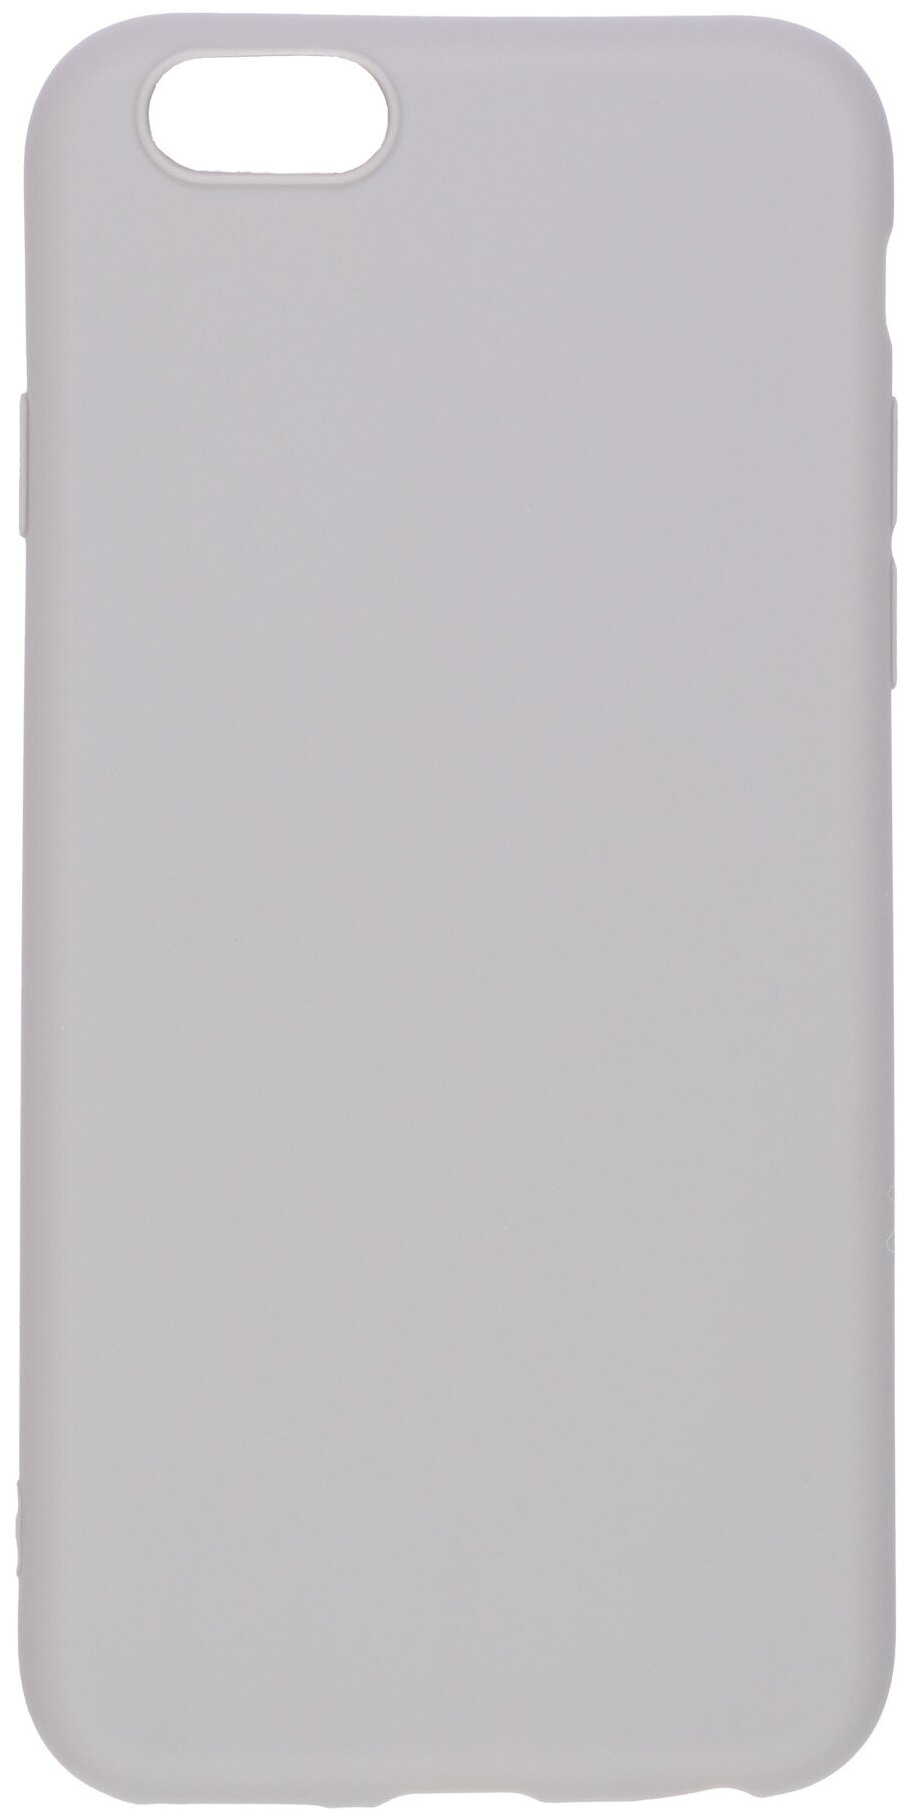 Чехол для Apple Iphone 6; Apple Iphone 6S. Силиконовый. Серый.